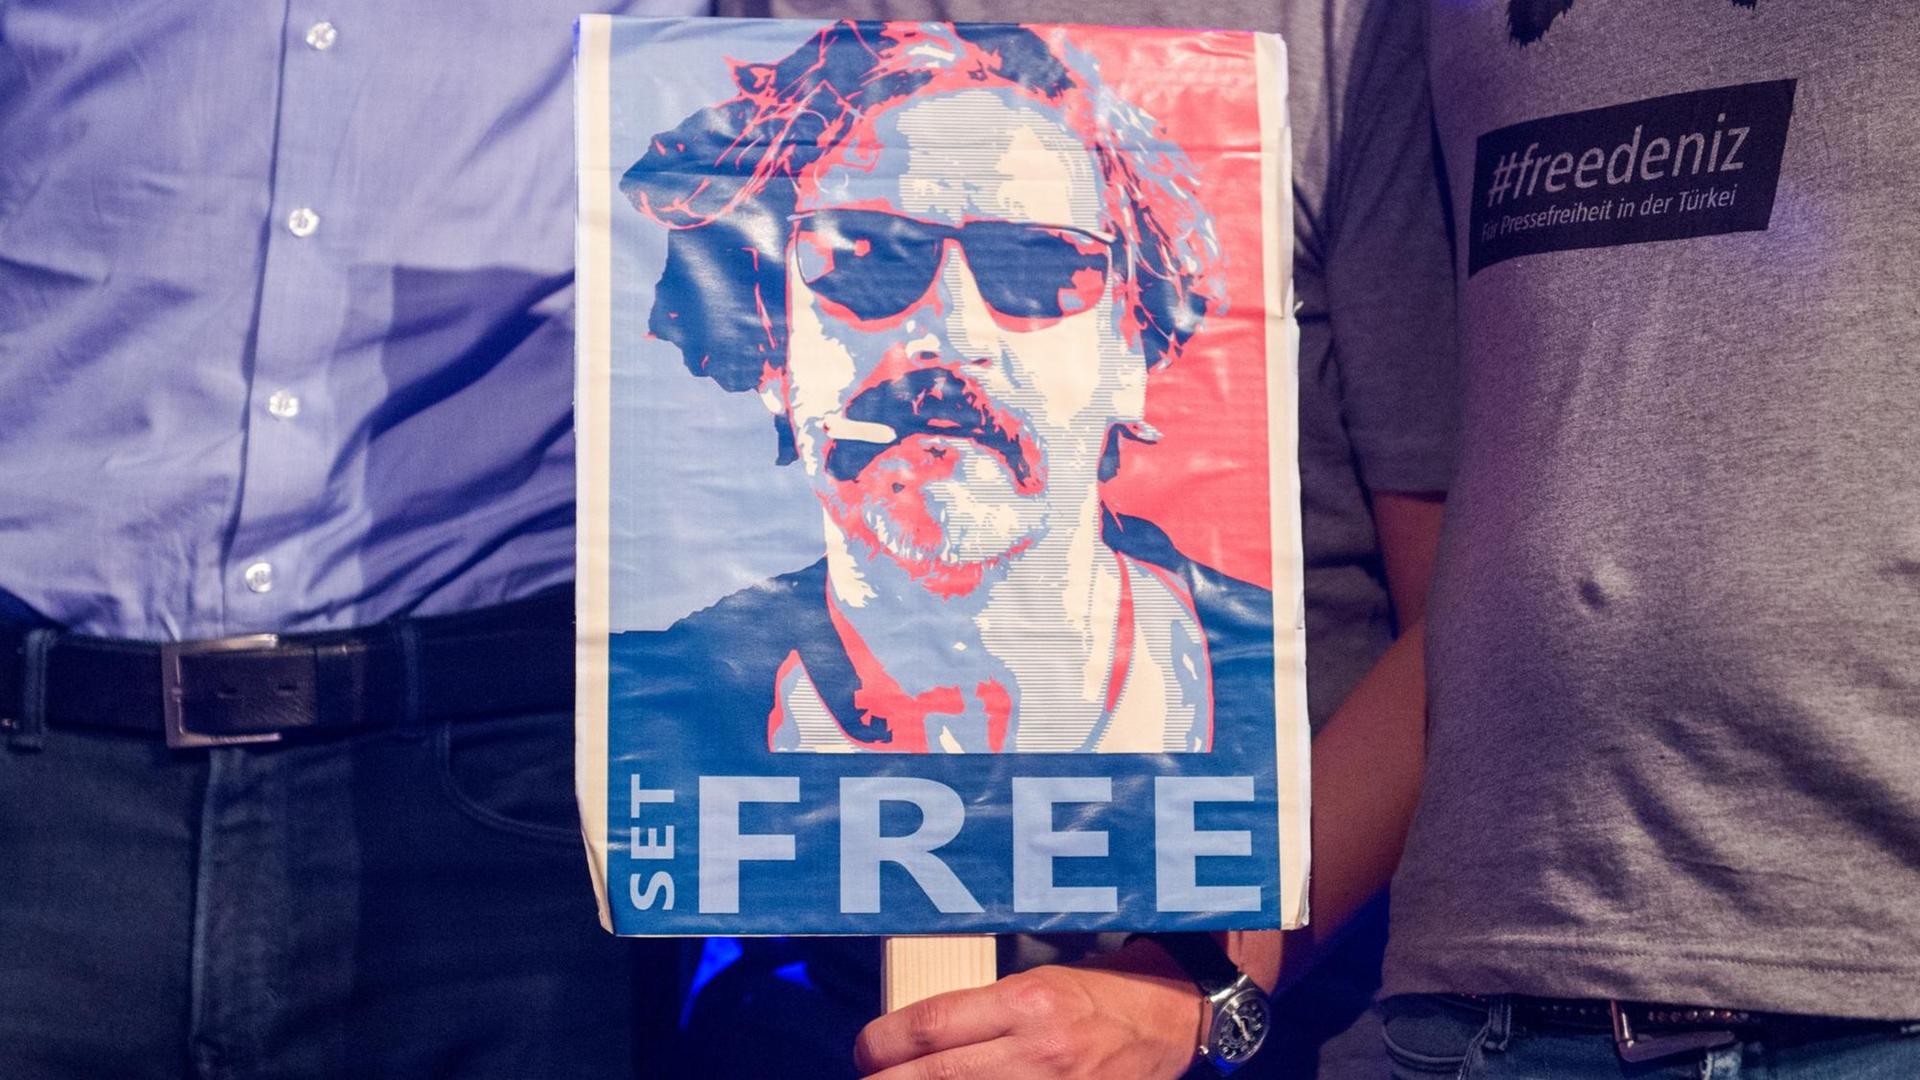 Das Archivbild zeigt ein Schild mit der Aufschrift "Free" und einem Foto des inhaftierten Journalisten Deniz Yücel.